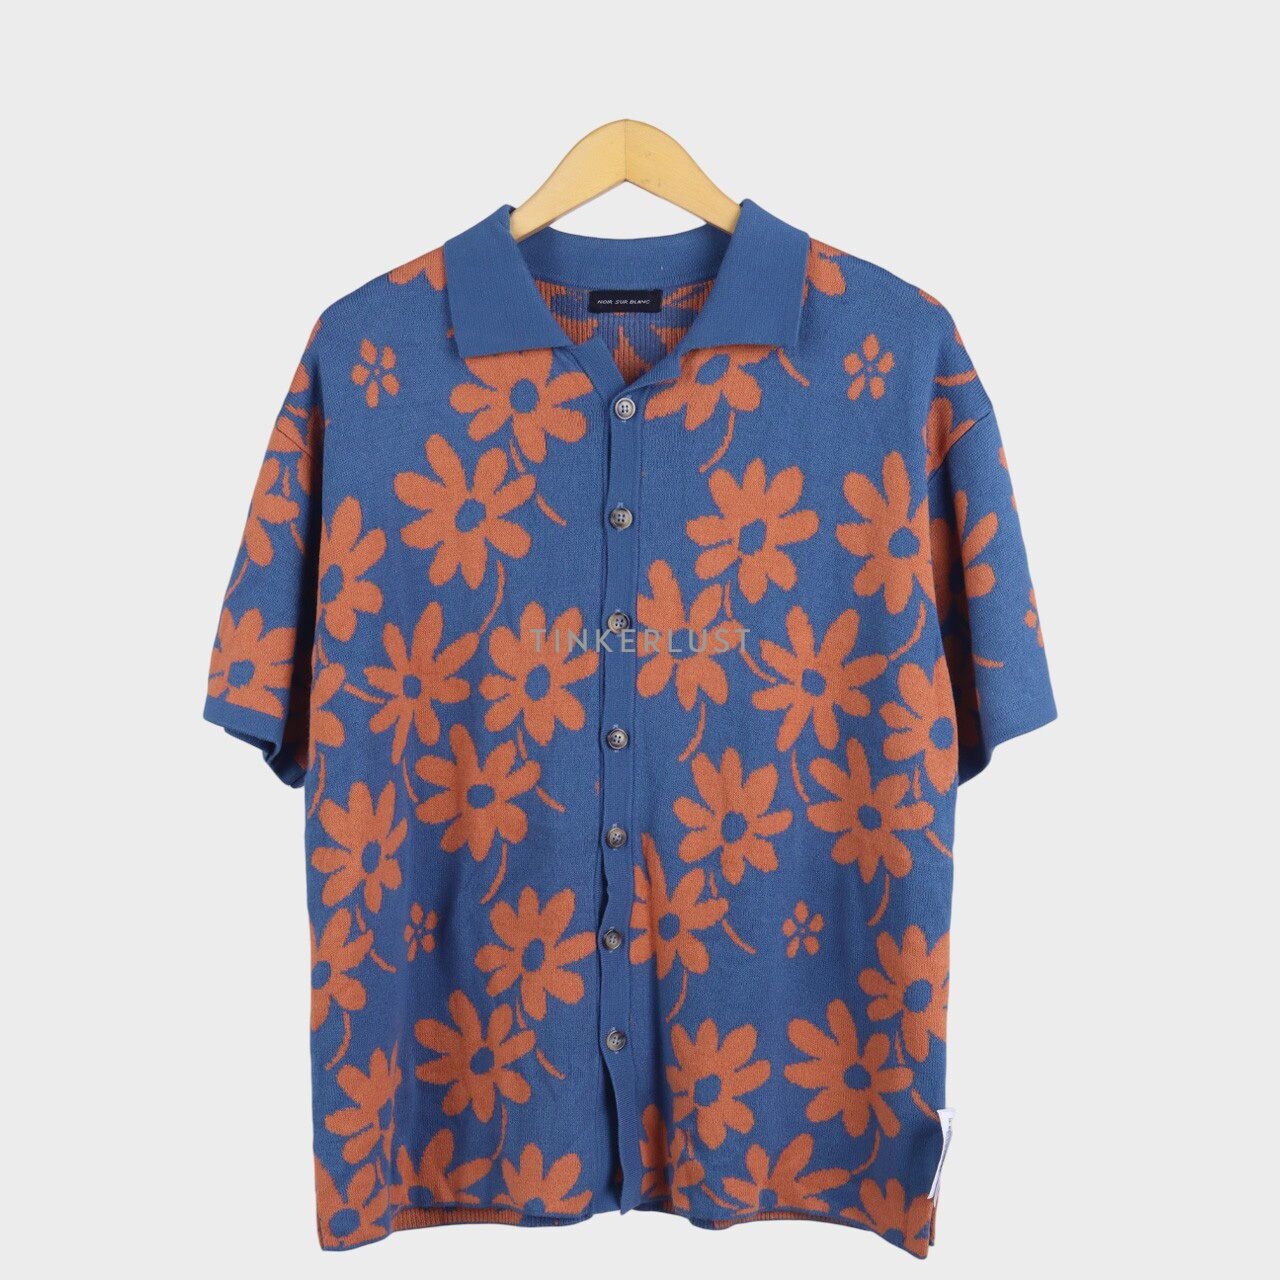 Noir Sur Blanc Blue & Orange Floral Knit Shirt